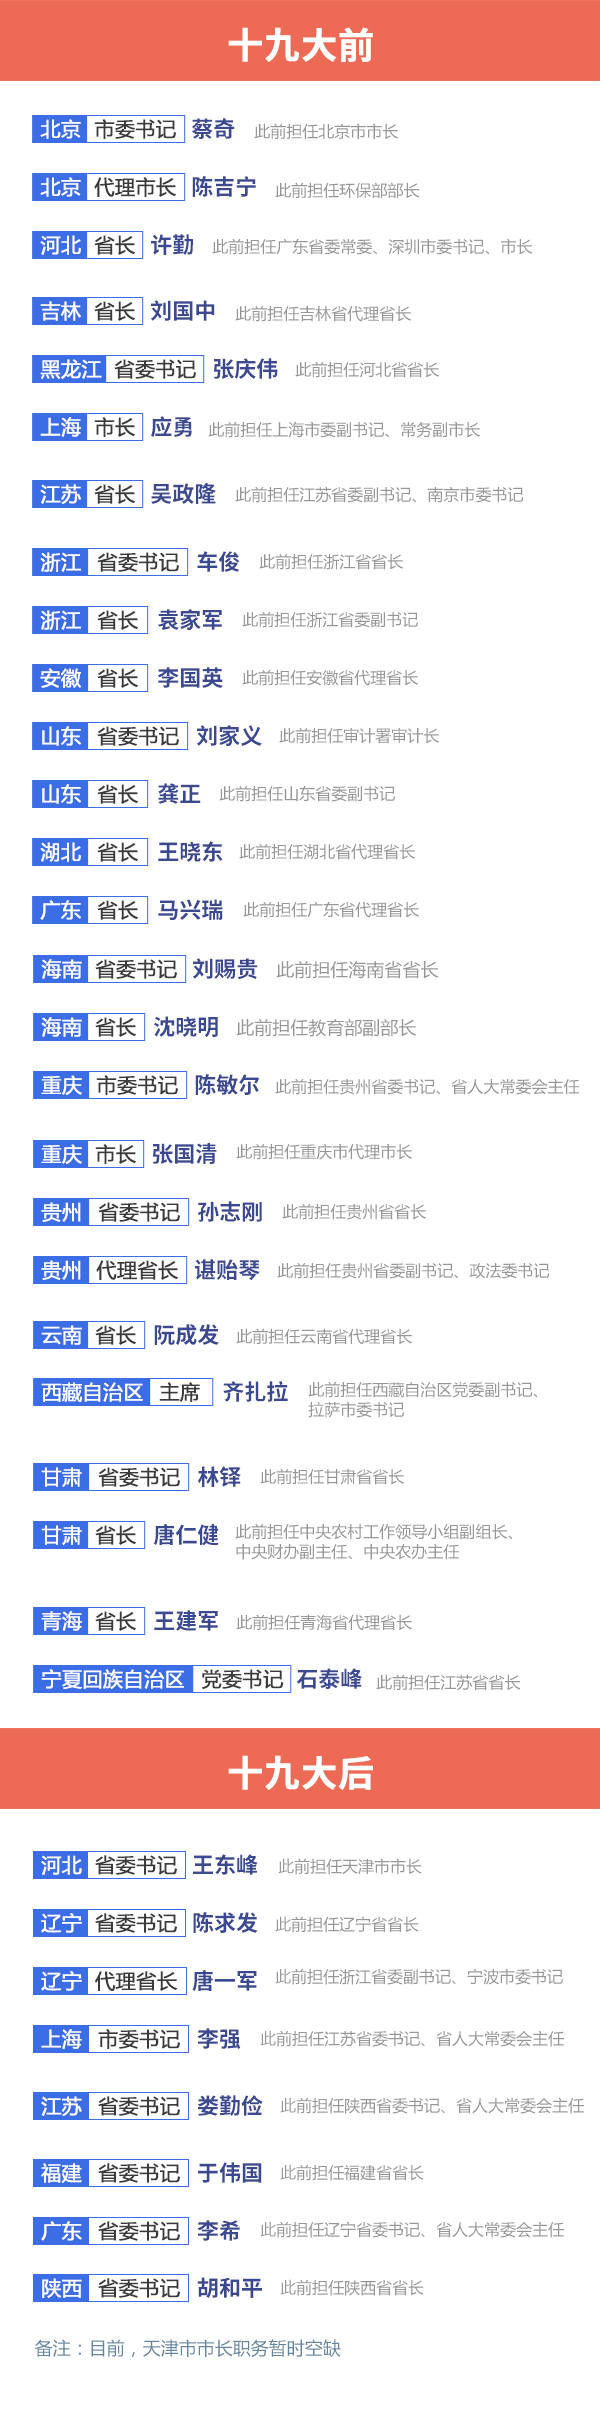 经记者梳理，2017年省级党政主要领导调整（见表1）在十九大前后分别出现几波小高潮。其中，省委书记调整主要集中在4月和10月，省长调整主要集中在1月。       1月的地方两会季上，7名代理省长（市长）在地方人大会上正式当选省长（市长），上海、西藏直接选举任命了新市长（主席）；4月，6省区在当地党代会召开前调整了党委书记职务，多名省长出任省委书记职务；10月，在十九大闭幕后，时任河北省委书记的赵克志、上海市委书记的韩正、福建省委书记的尤权、广东省委书记的胡春华赴中央履新，7地联动调整省委书记，填补相关空缺职务。       目前，福建、陕西省委新任书记继续兼任省长职务。北京市市长、辽宁省省长、贵州省省长系代理，天津市市长职务暂时空缺。【详细】